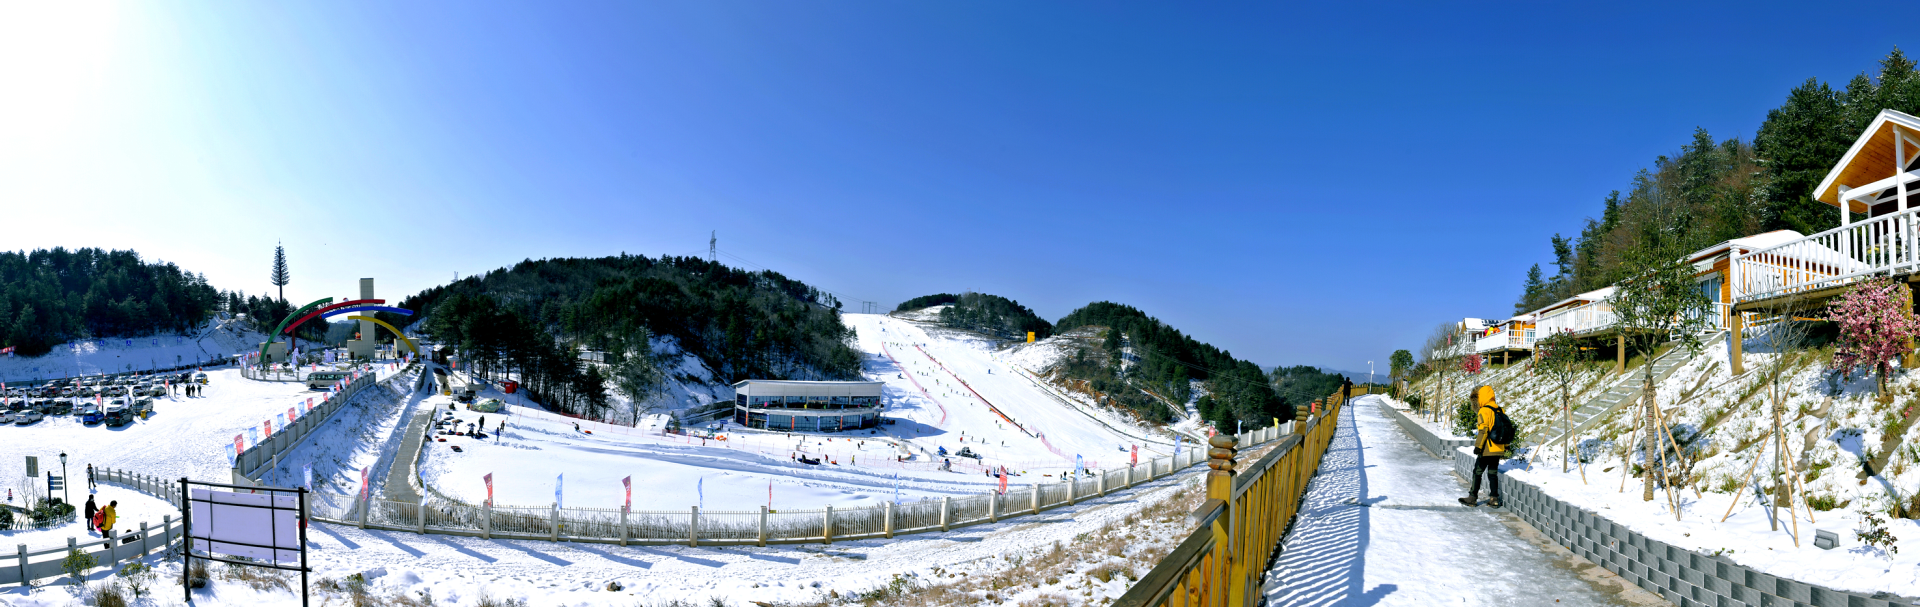 四川廣元國際滑雪場